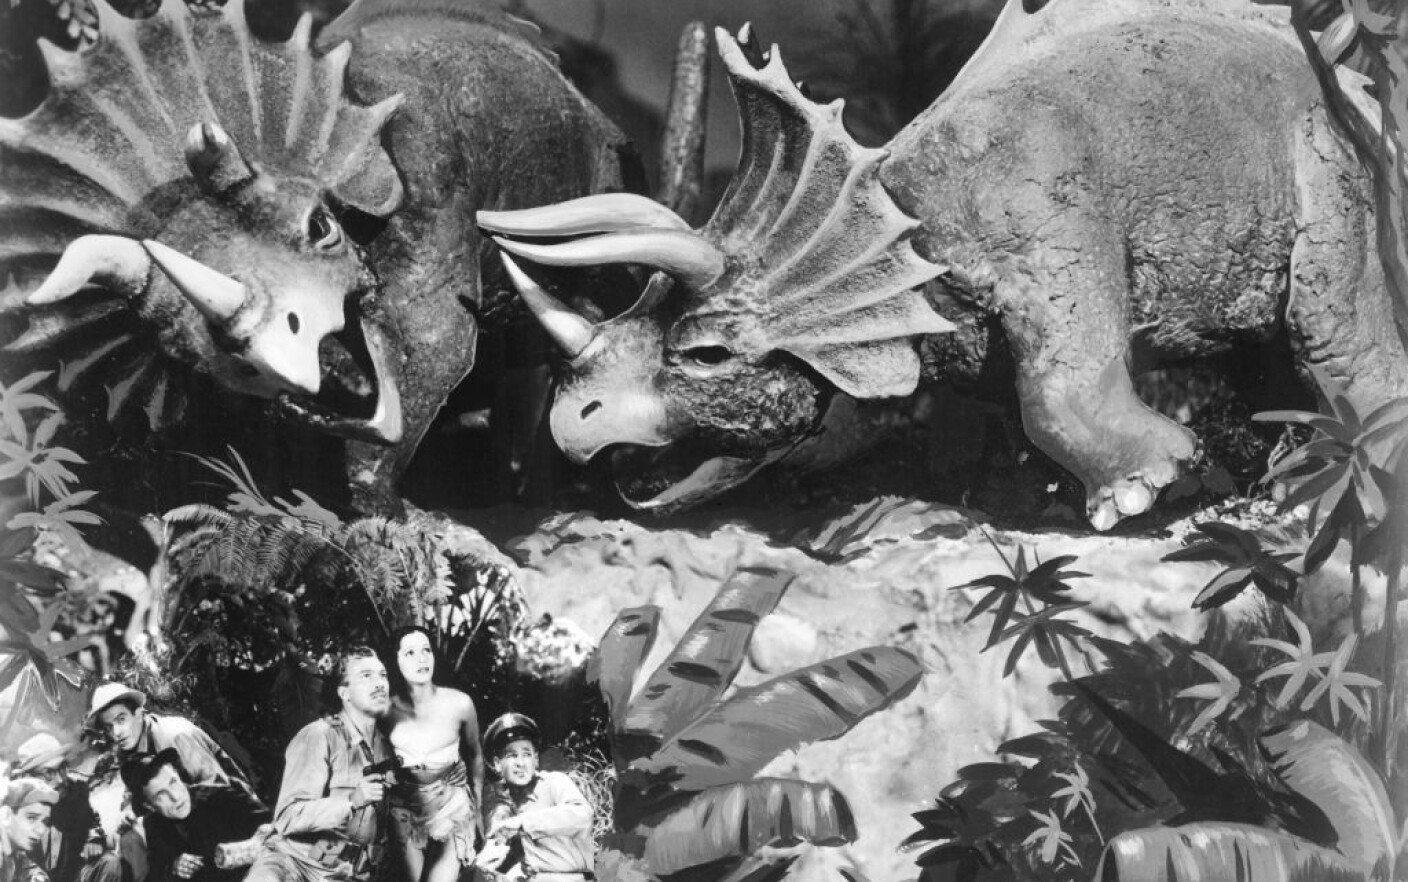 Scena din filmul ”Lost Continent”, din 1951